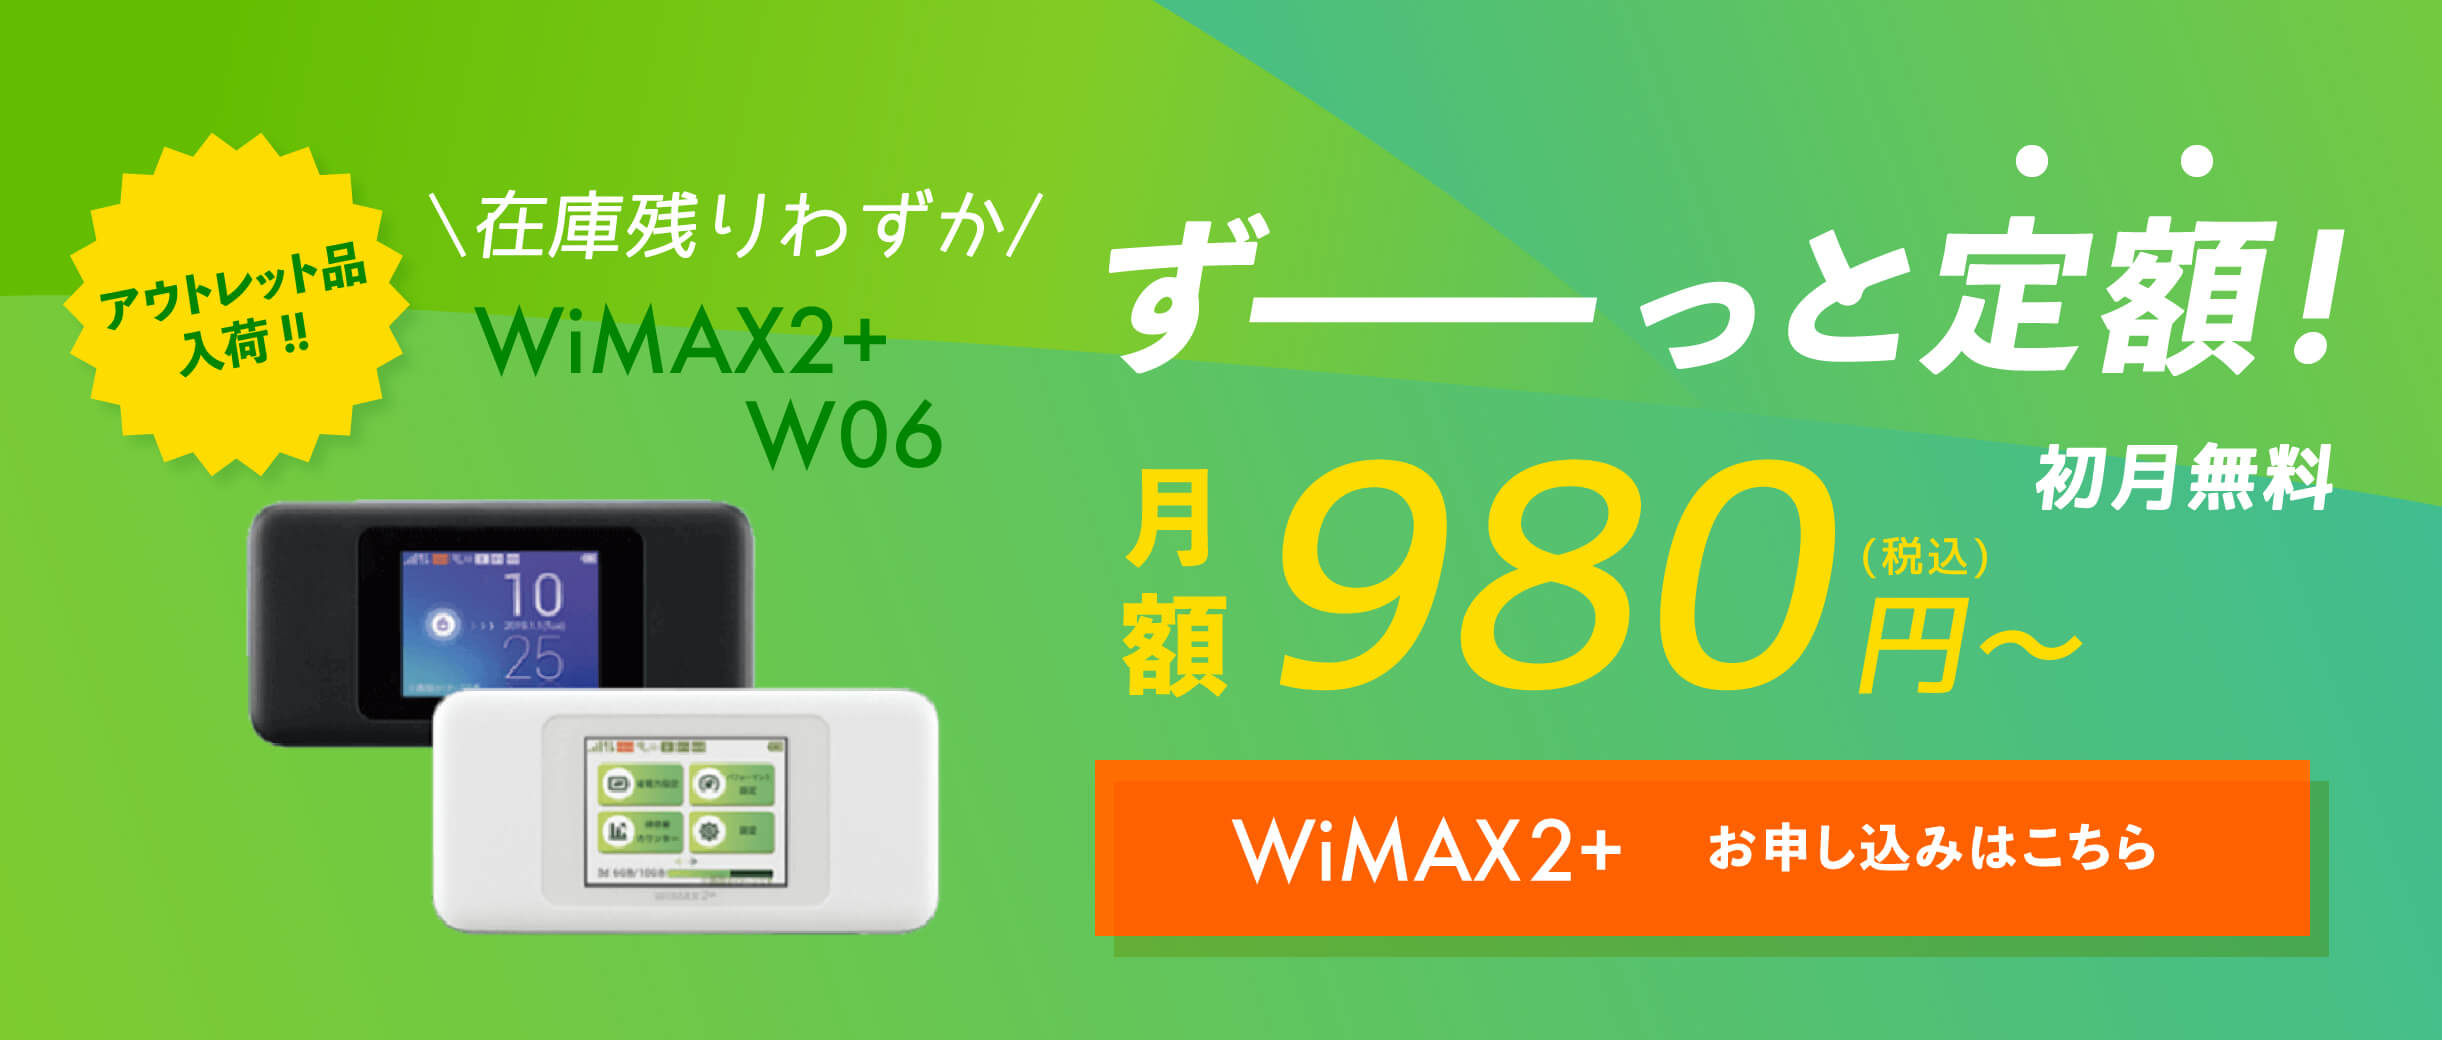 WiMAX 2 W06